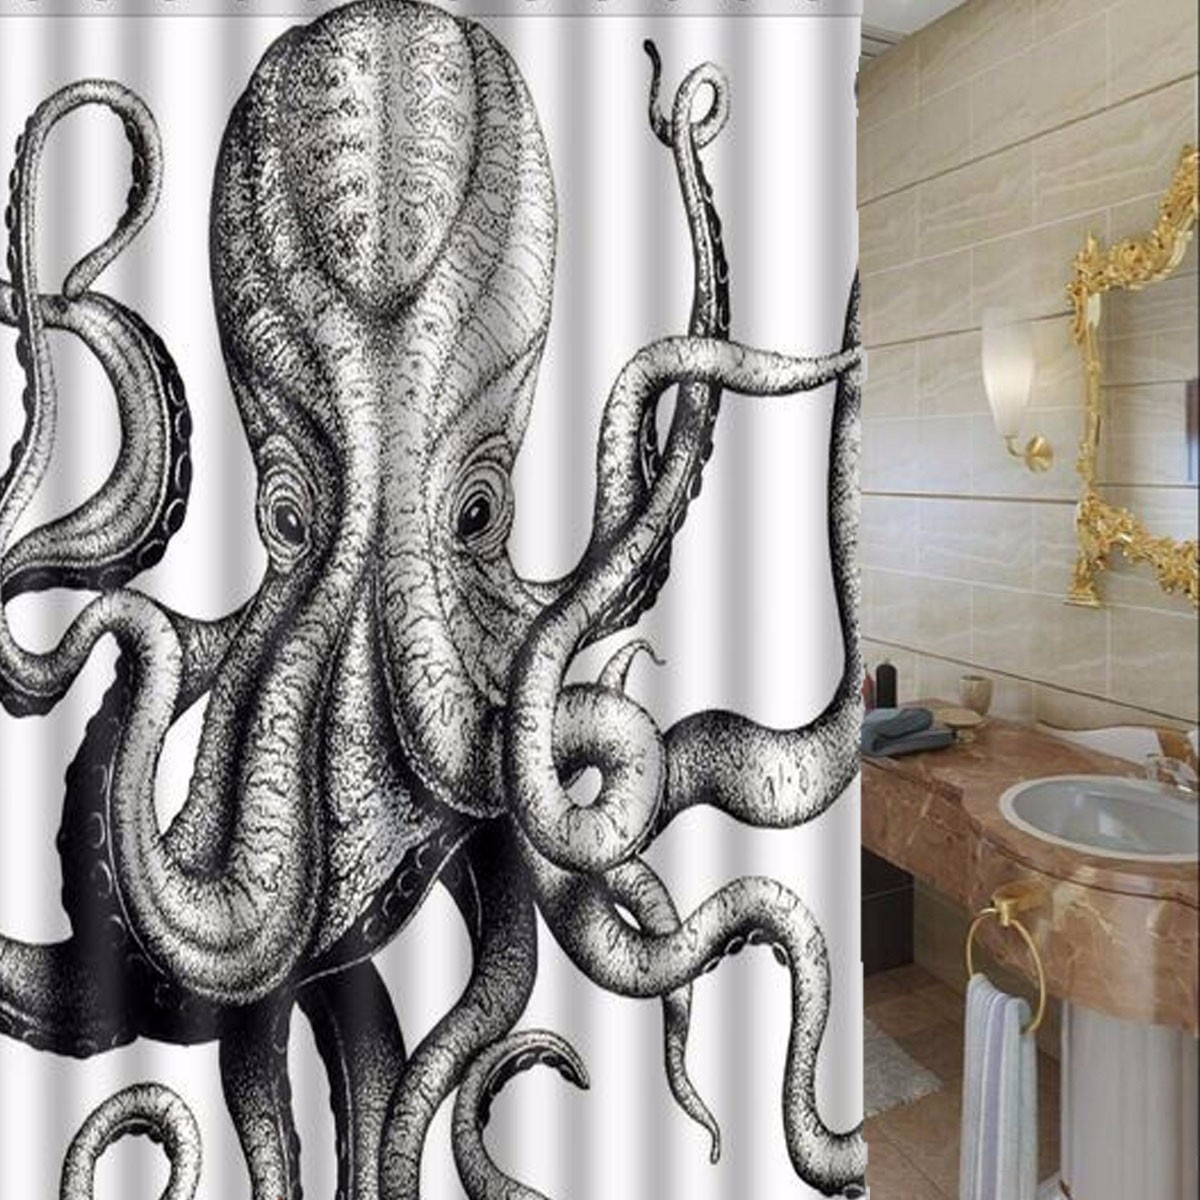 Octopus Bathroom Waterproof Shower, Octopus Bathroom Accessories